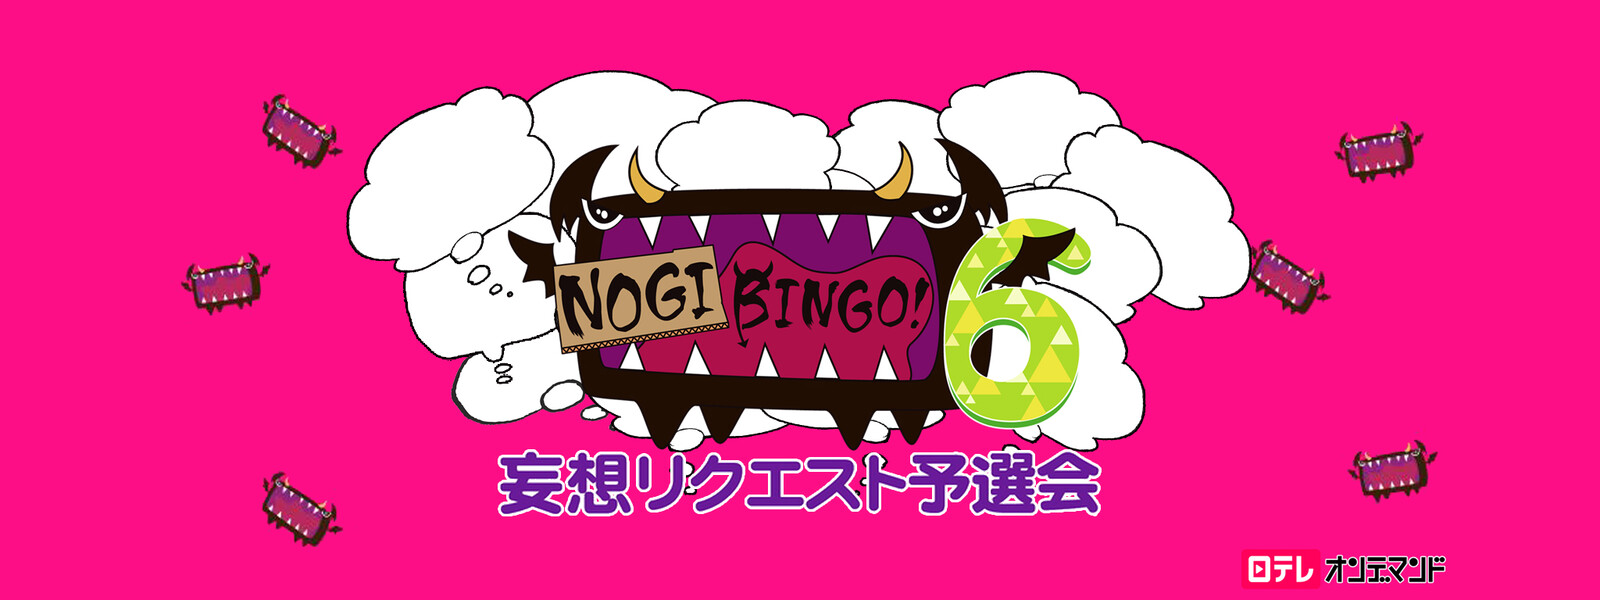 NOGIBINGO! 6 妄想リクエスト予選会の動画 - NOGIBINGO! 4